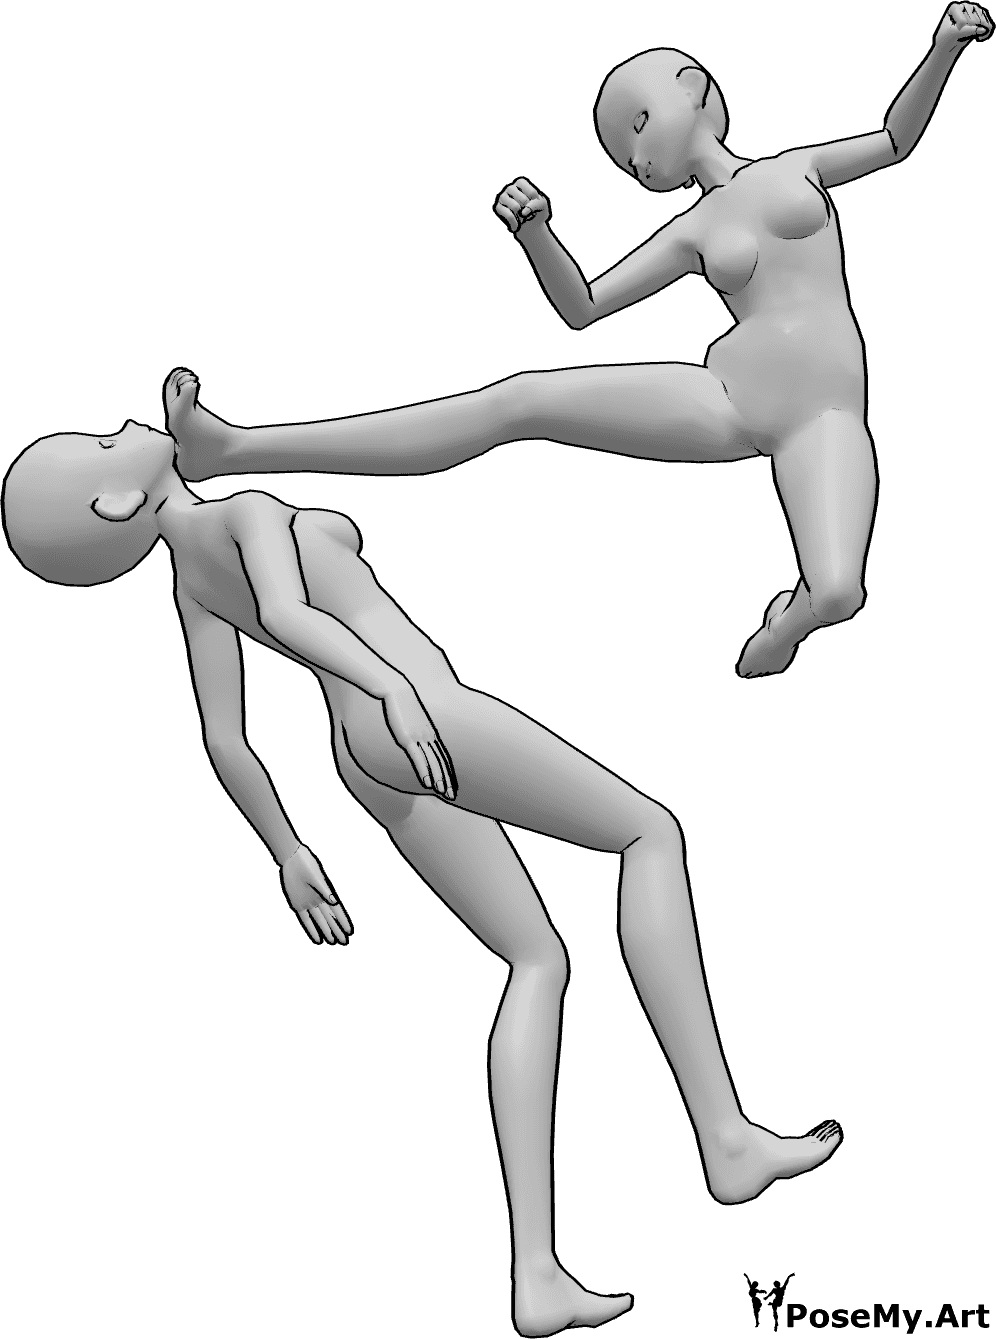 Référence des poses- Pose de coup de pied d'une femme d'animation - Des femelles d'animaux se battent, l'une d'entre elles se lève et donne un coup de pied dans la tête de l'autre femelle.